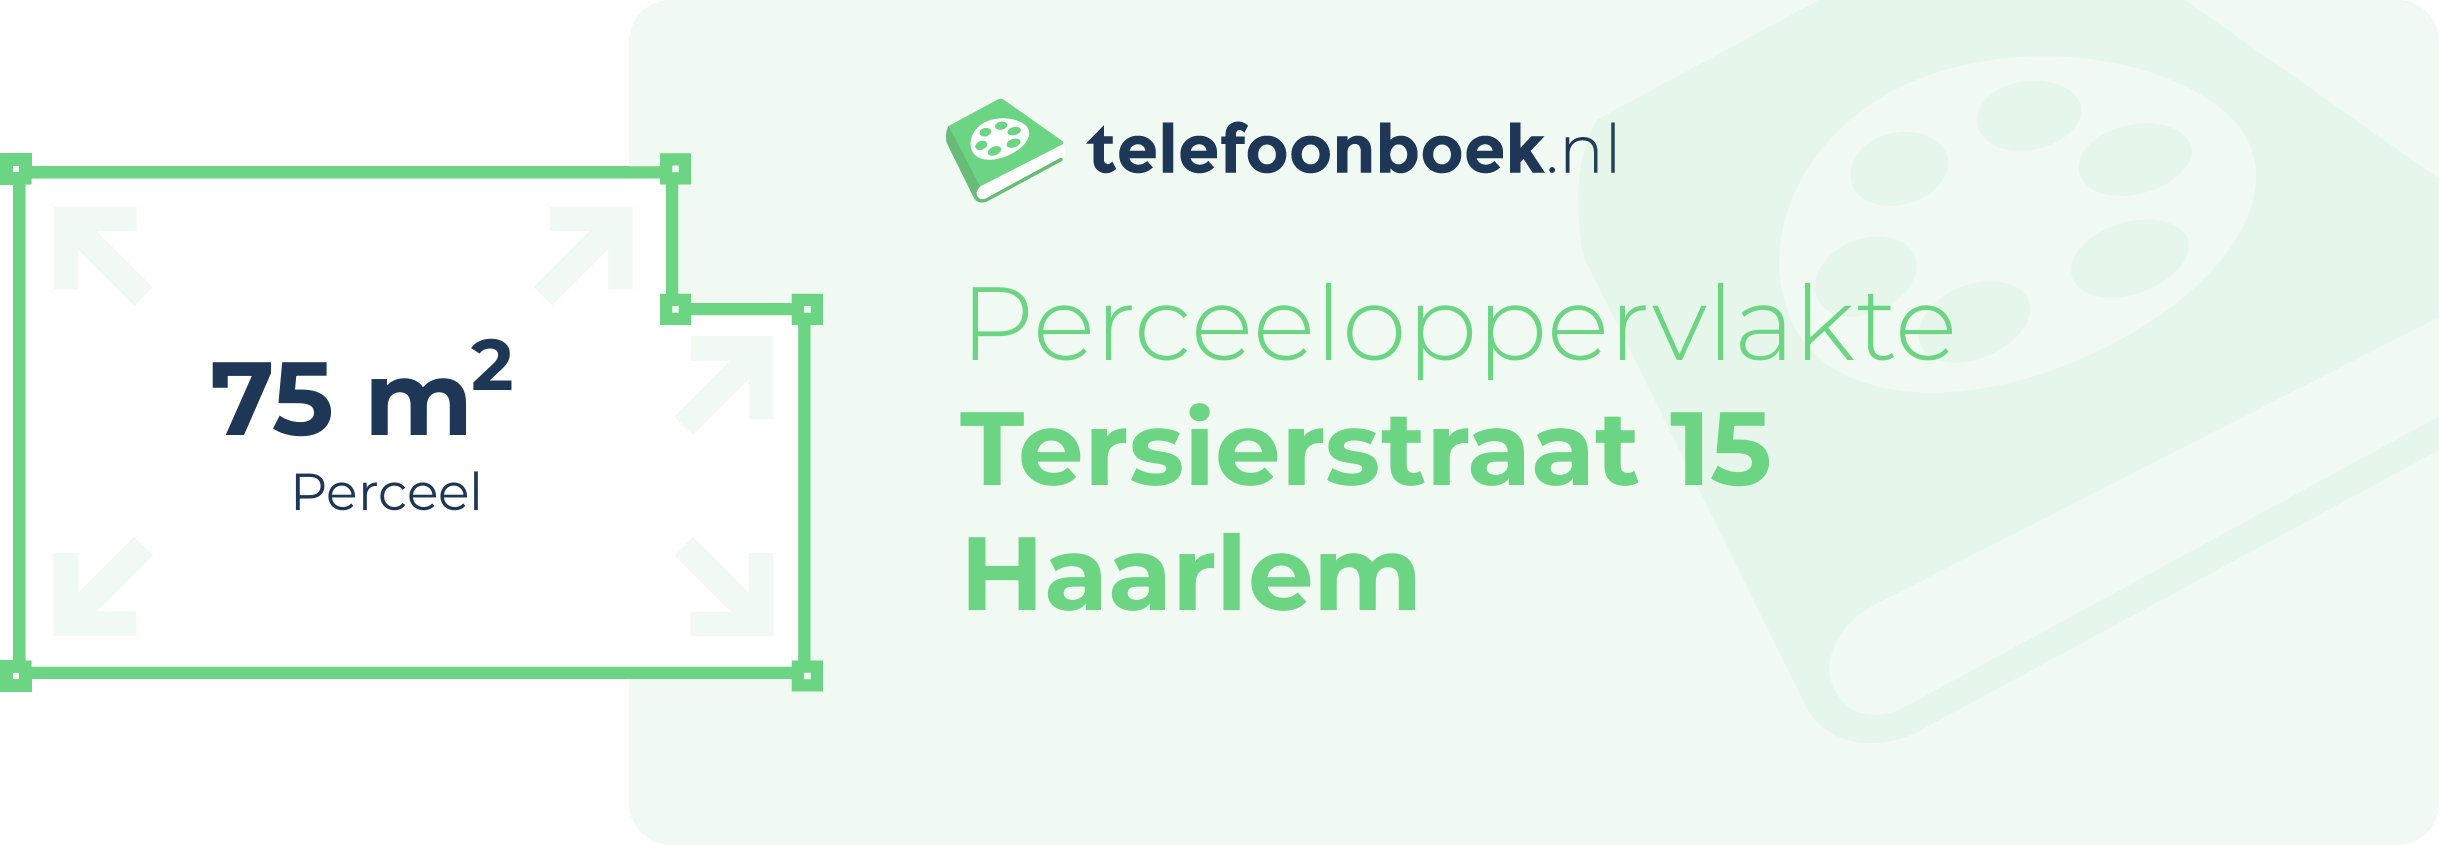 Perceeloppervlakte Tersierstraat 15 Haarlem